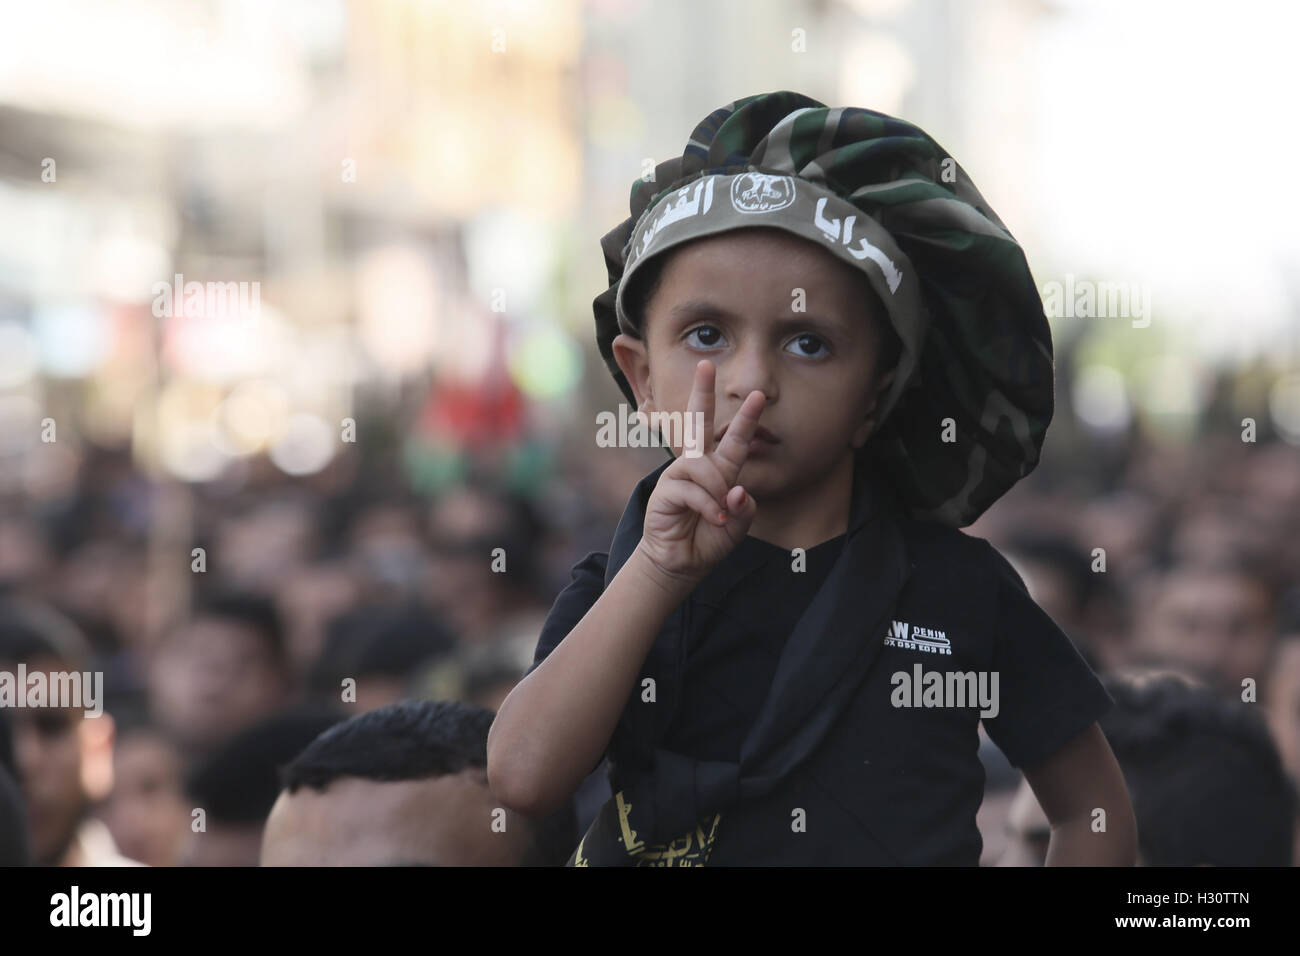 2 Ottobre 2016 - Gaza City, la striscia di Gaza, la Palestina - un ragazzo palestinese durante la Jihad islamica movimento rally militare che segna il primo anniversario dell'insurrezione di Al-Quds di Gaza City. (Credito Immagine: © Mahmoud Issa/Quds Net News via ZUMA filo) Foto Stock